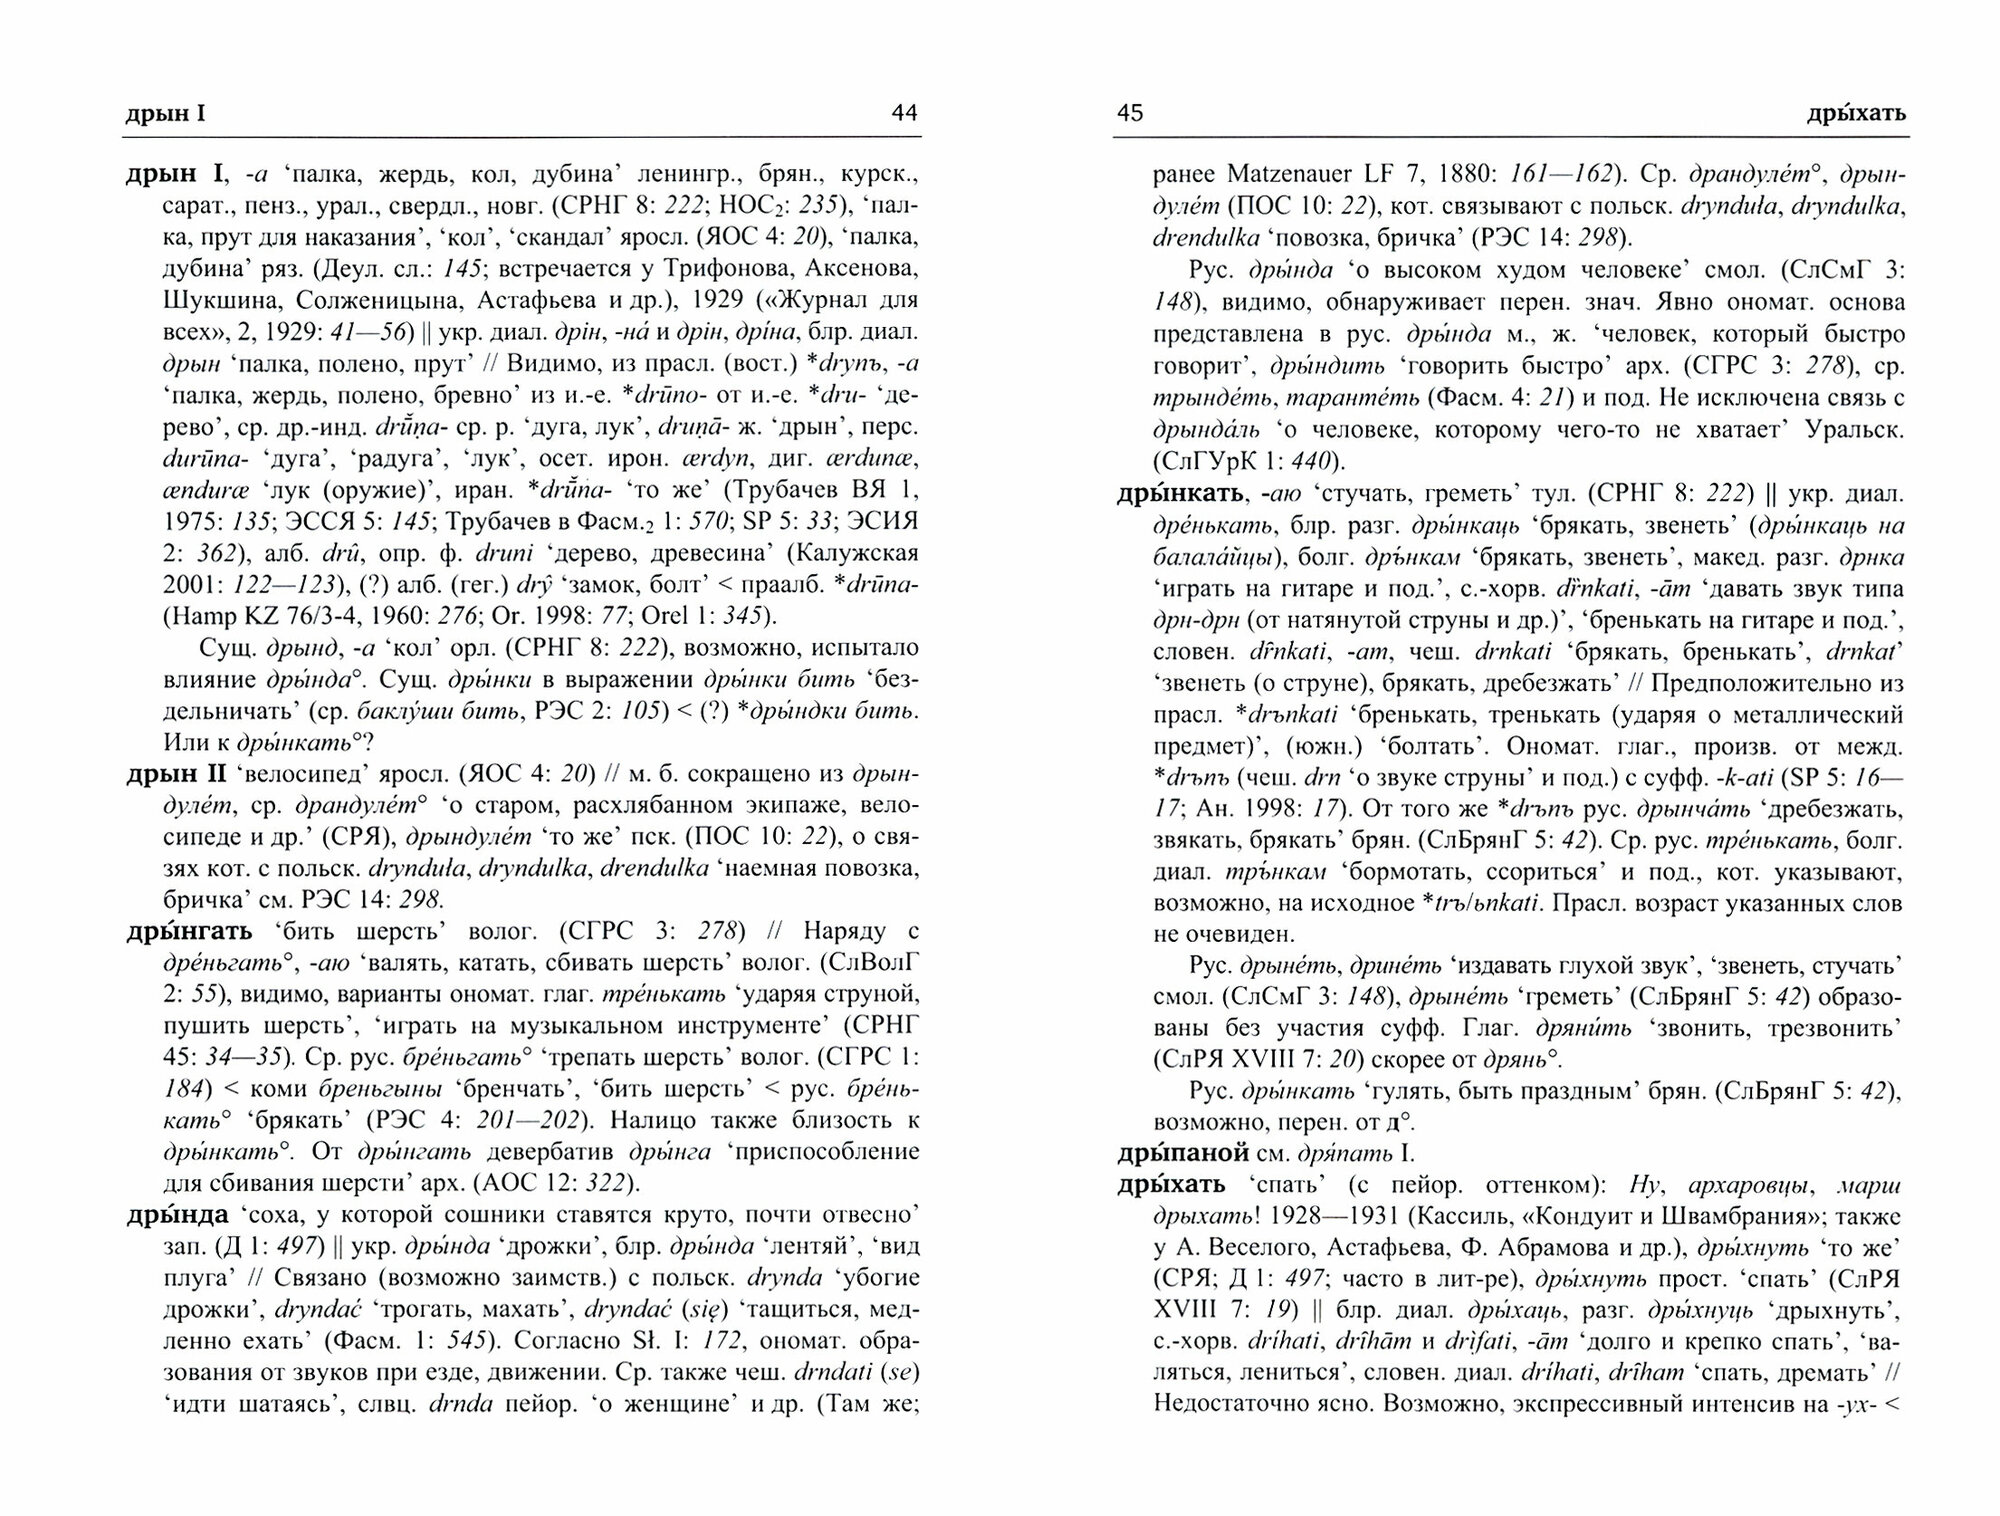 Русский этимологический словарь. Выпуск 15 (друг I - еренга) - фото №3